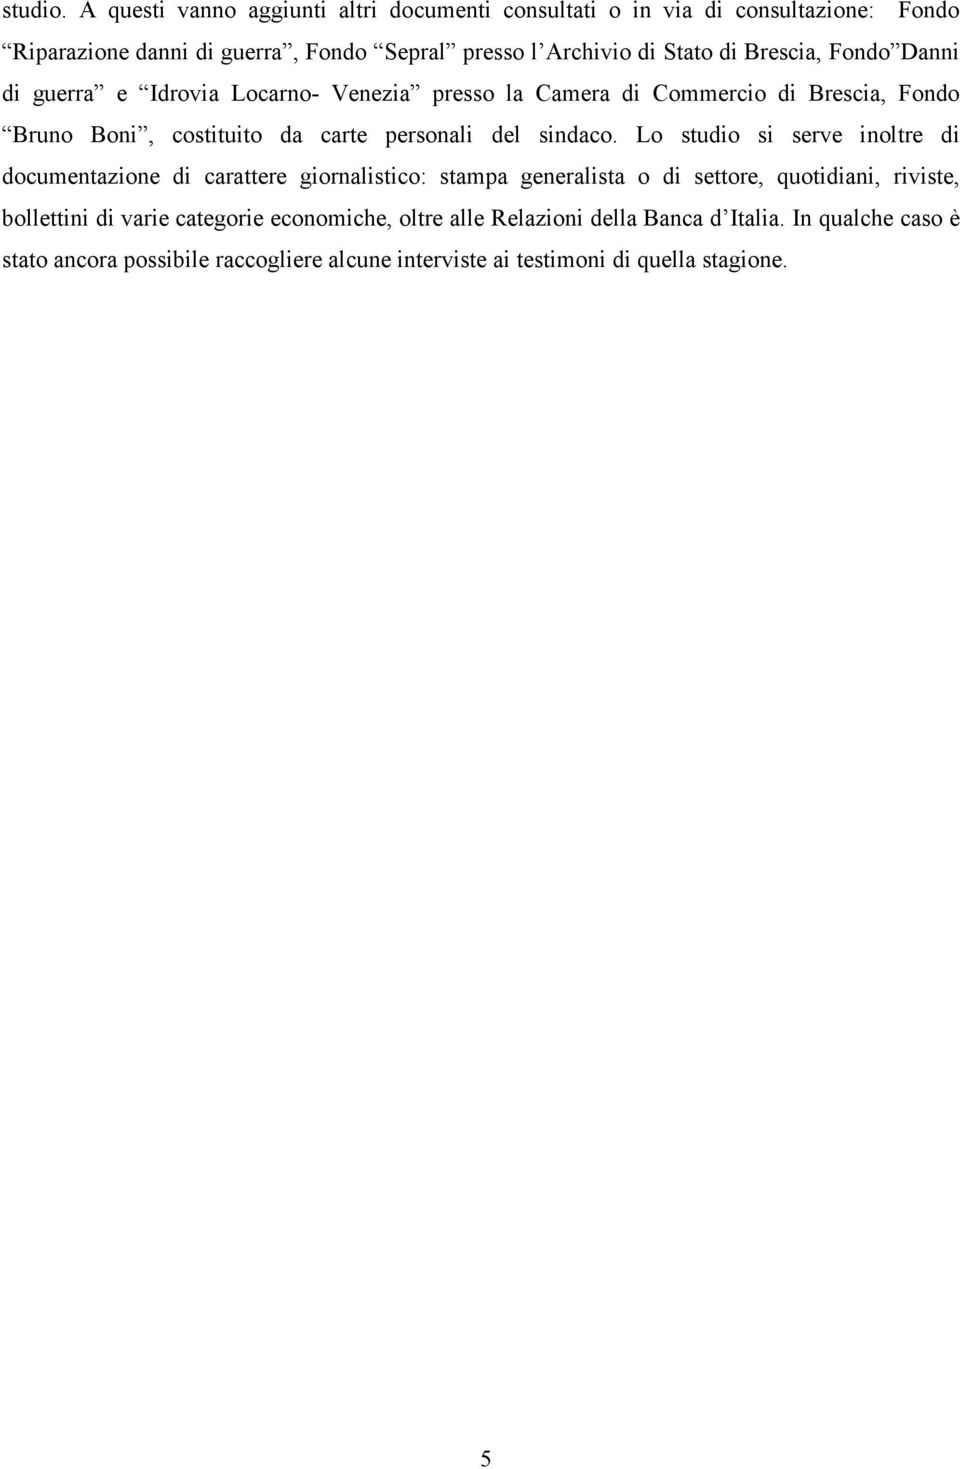 Brescia, Fondo Danni di guerra e Idrovia Locarno- Venezia presso la Camera di Commercio di Brescia, Fondo Bruno Boni, costituito da carte personali del sindaco.